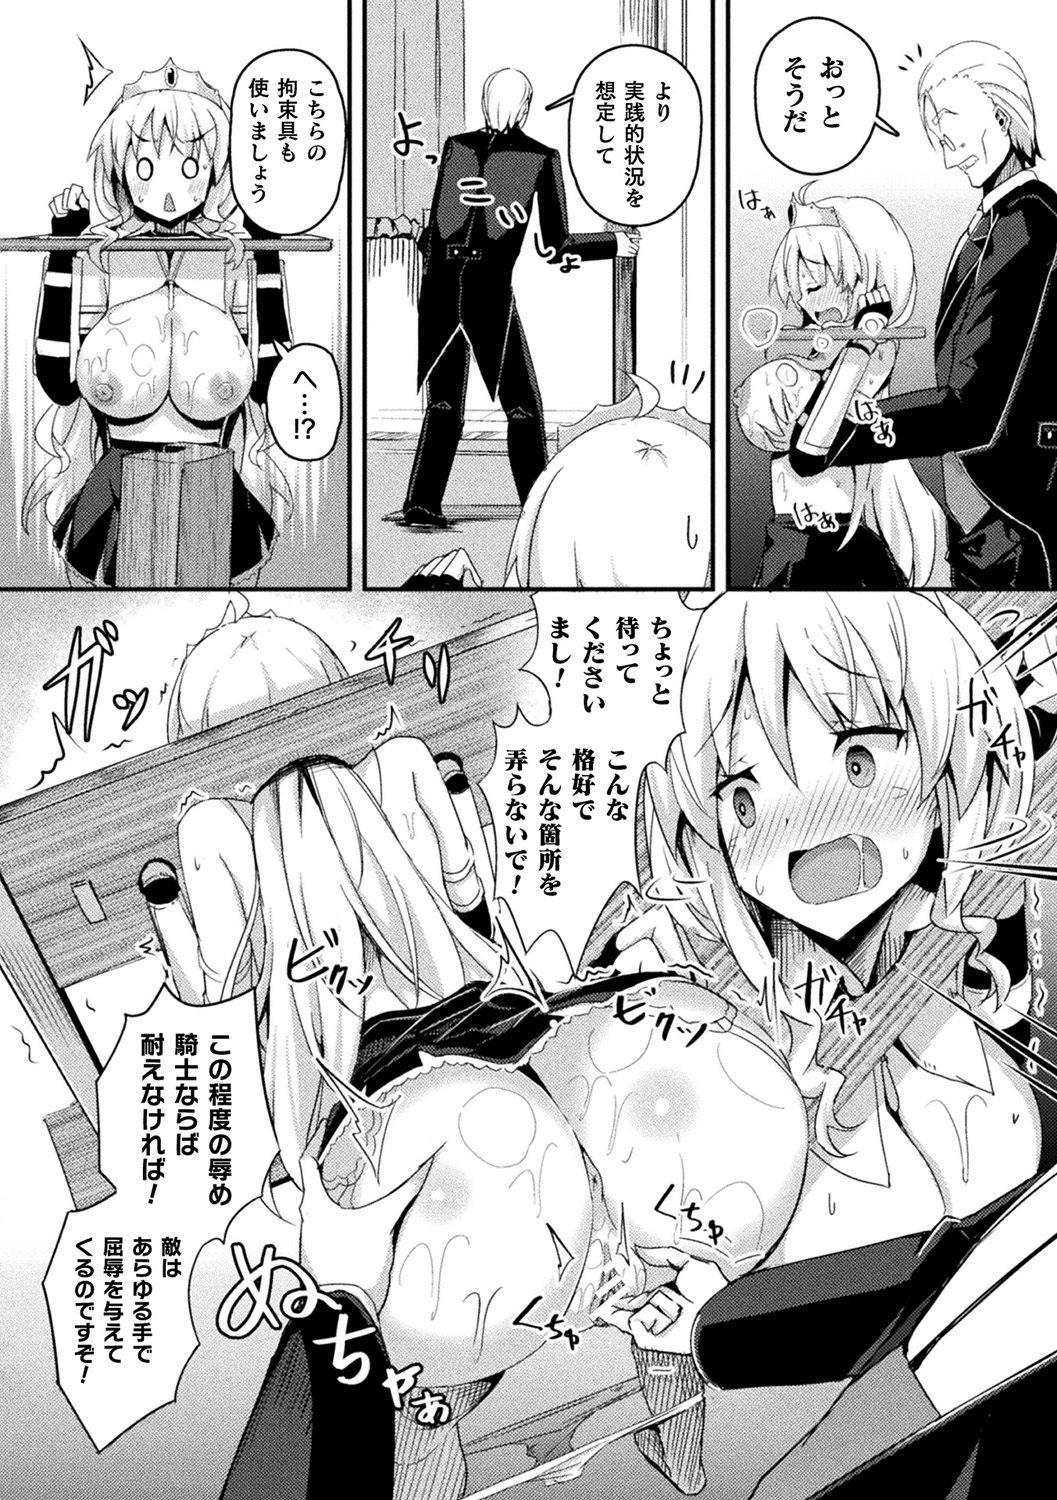 [Anthology] Bessatsu Comic Unreal Ponkotsu Fantasy Heroine H ~Doji o Funde Gyakuten Saretari Ero Trap ni Hamattari!?~ Vol. 2 [Digital] page 12 full